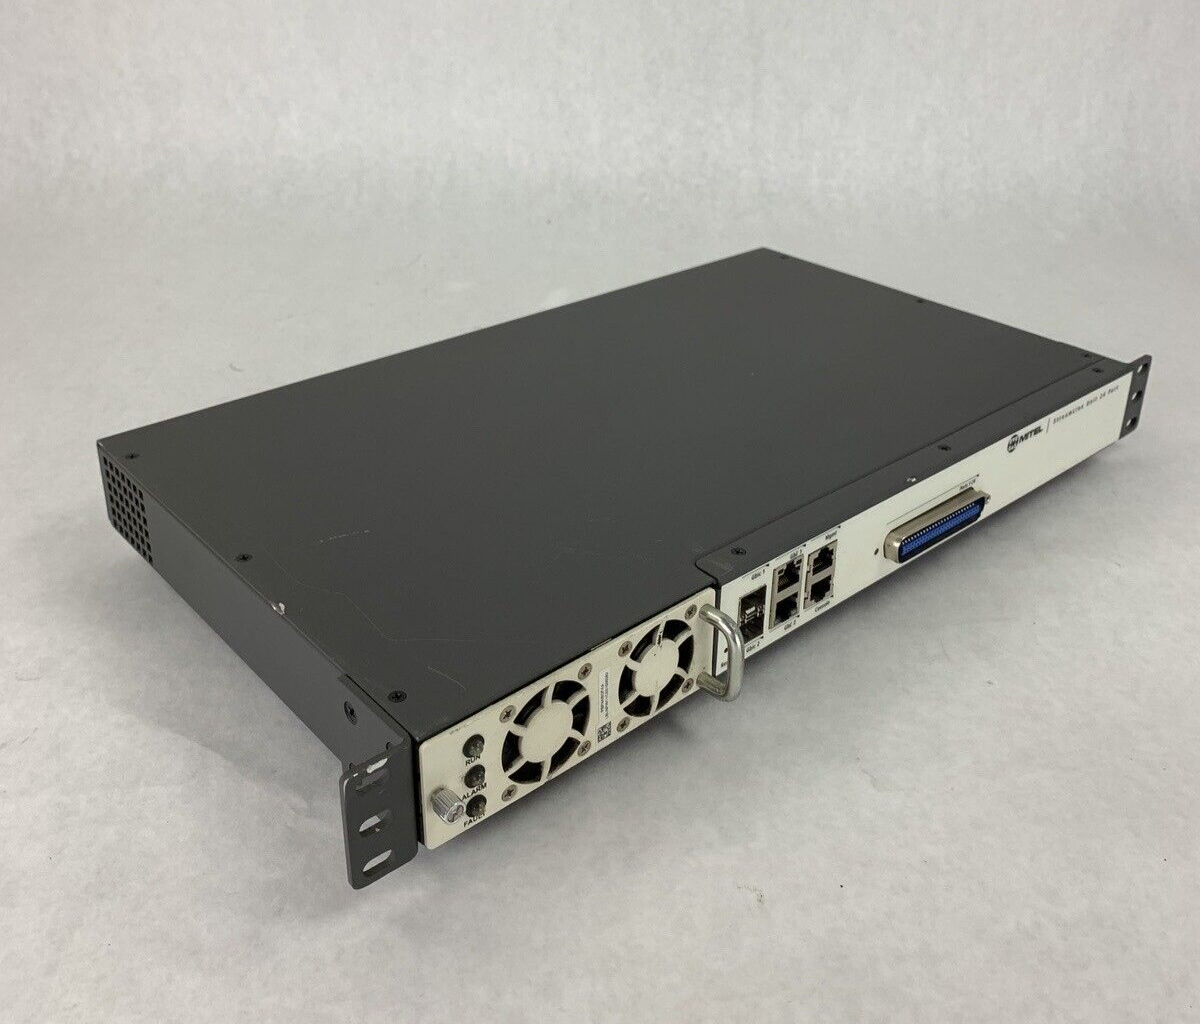 Mitel Unit T48 Port Streamline Switch 50006594 PL-024-MTL Tested